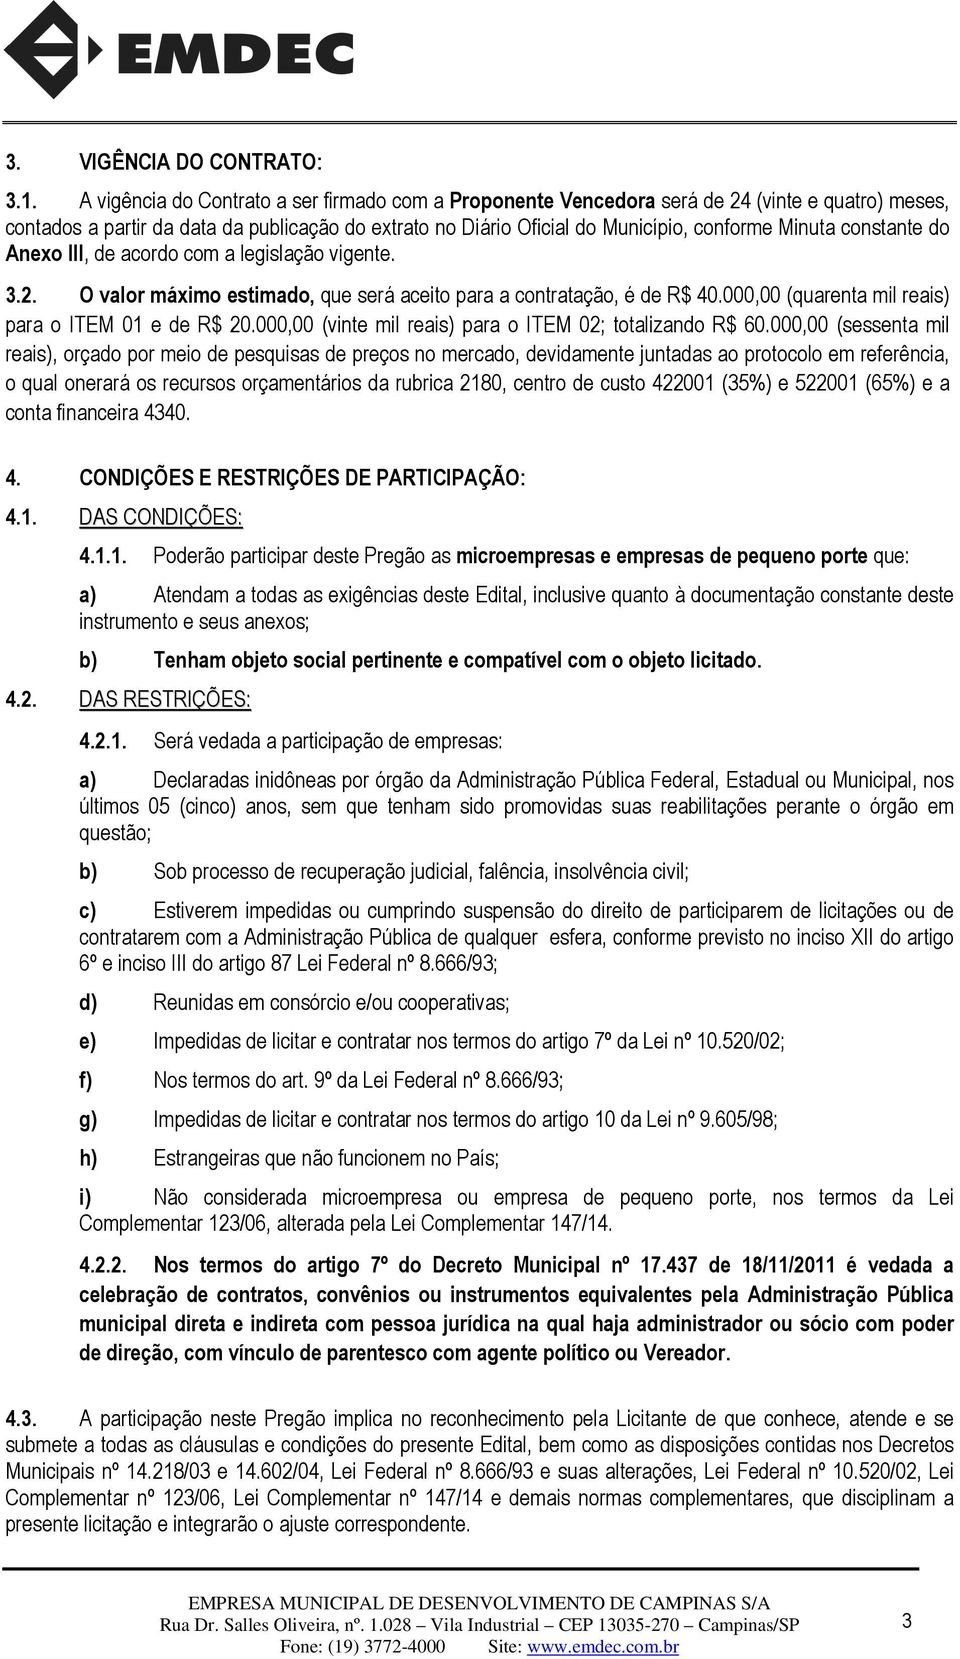 constante do Anexo III, de acordo com a legislação vigente. 3.2. O valor máximo estimado, que será aceito para a contratação, é de R$ 40.000,00 (quarenta mil reais) para o ITEM 01 e de R$ 20.